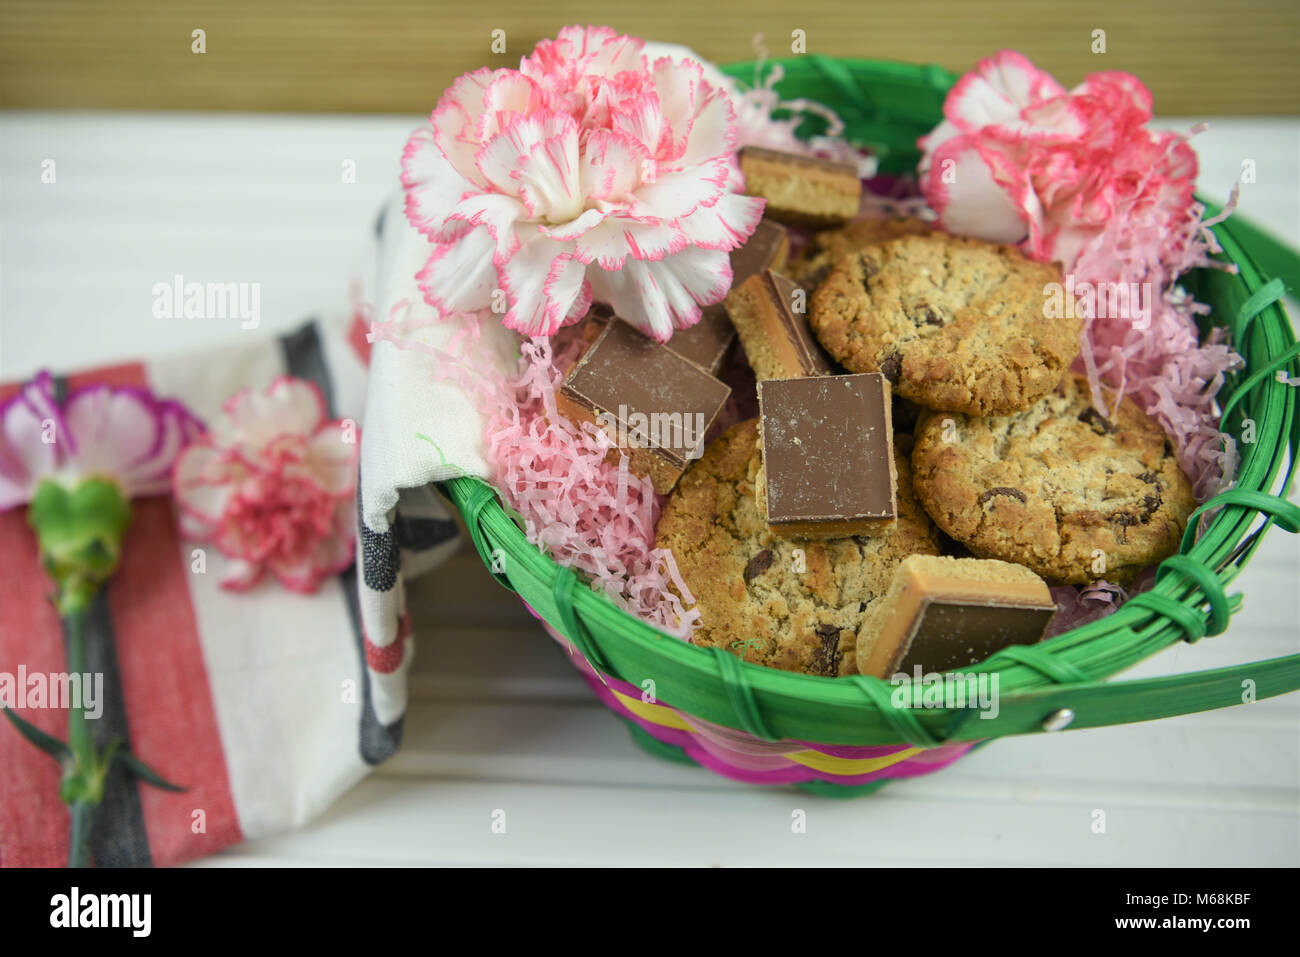 Beau cadeau alimentaire de cookies faits maison et des fleurs fraîches idéal pour un anniversaire ou la fête des mères, Pâques Banque D'Images